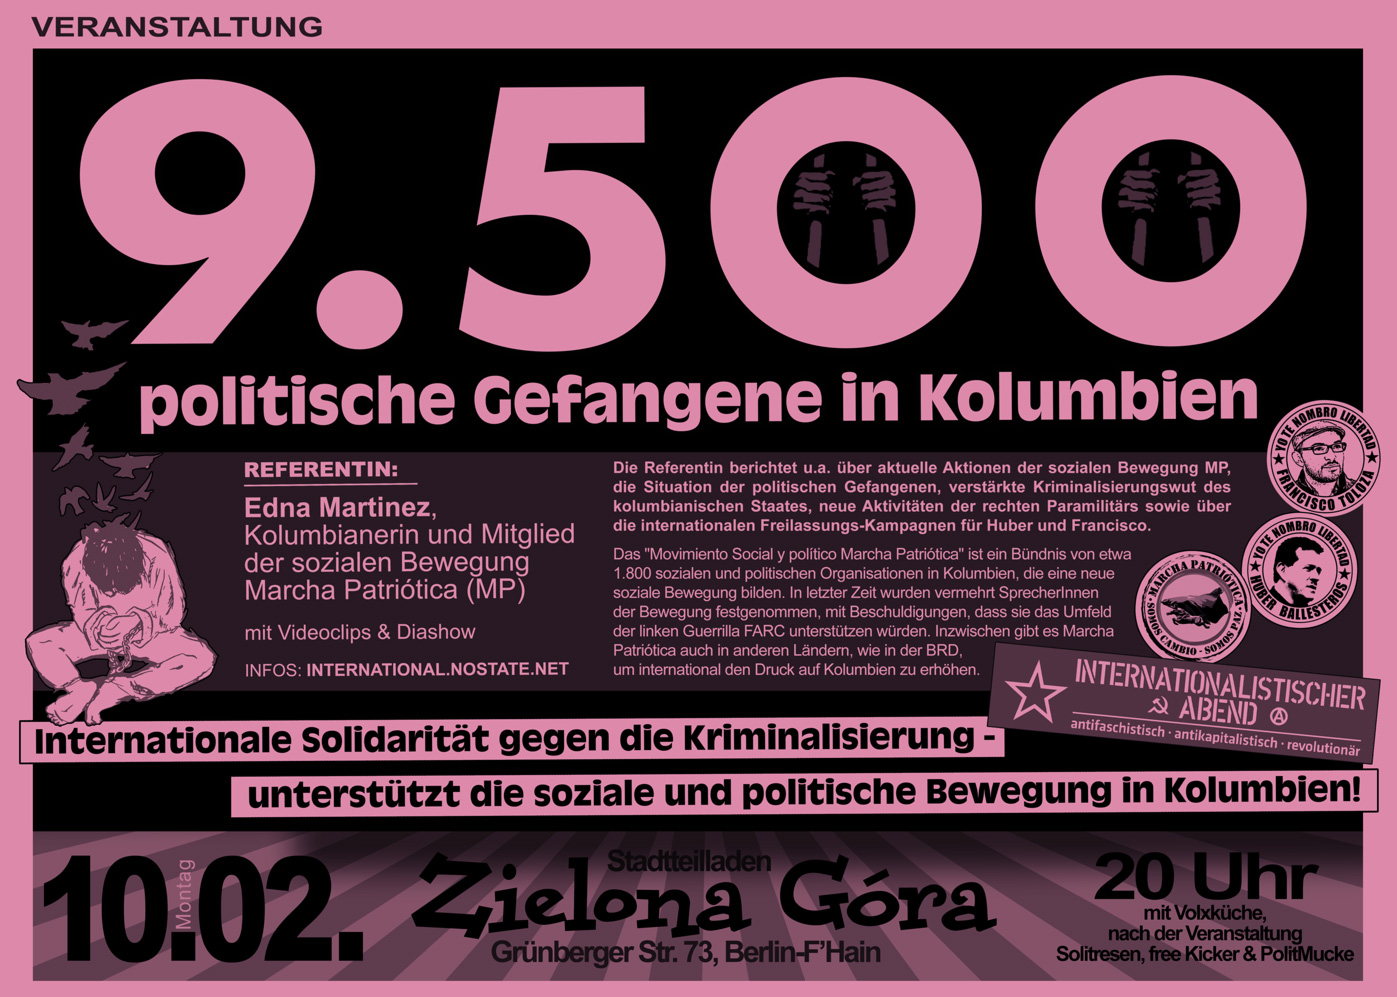 [Berlin] 10.02.2014 | Veranstaltung: Politische Gefangene und Widerstand in Kolumbien